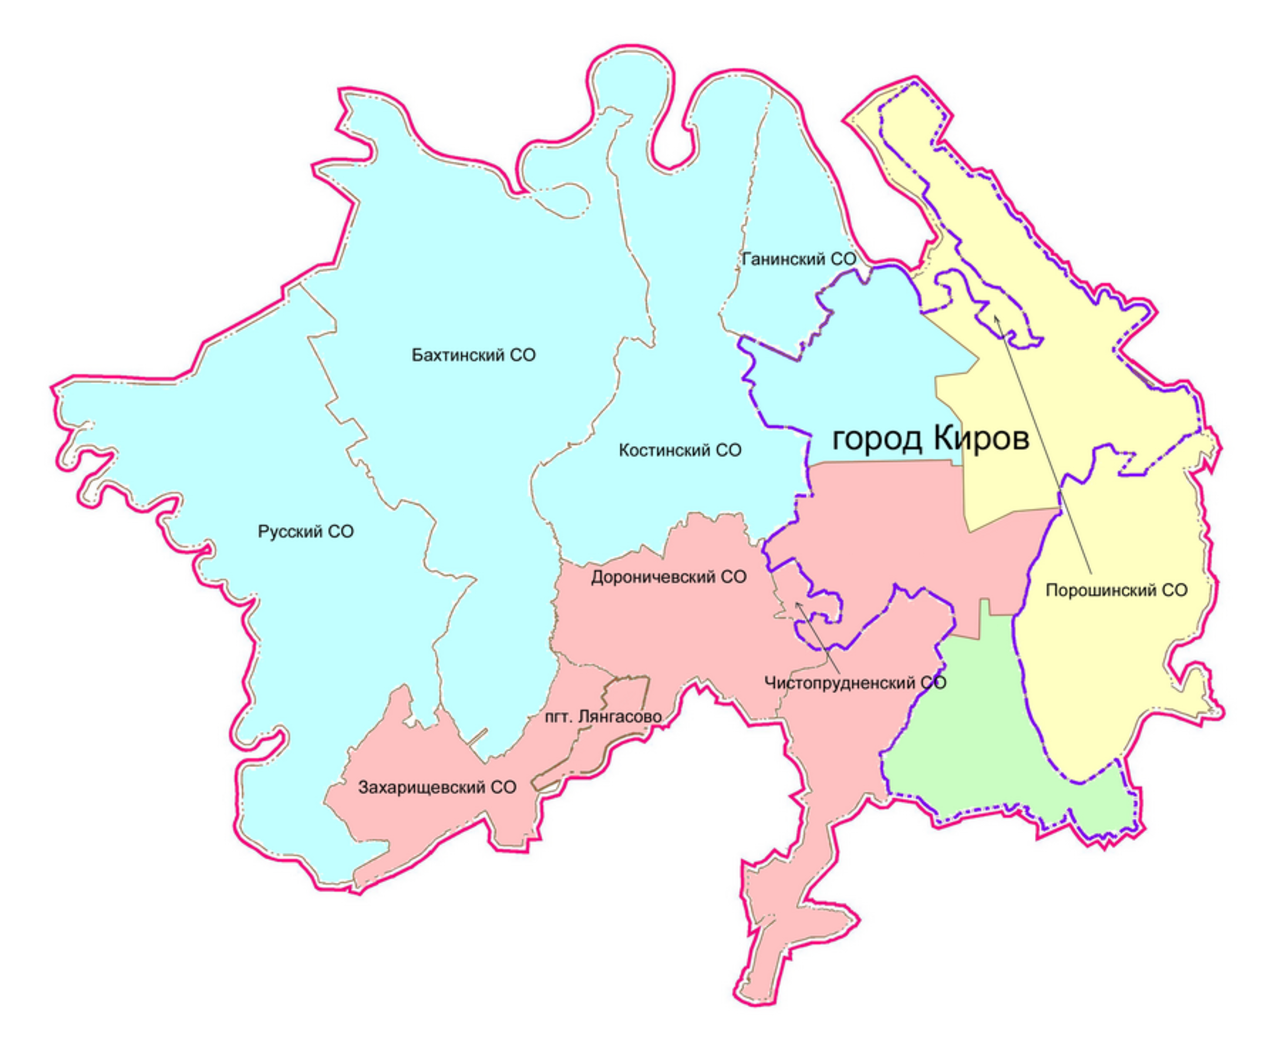 Районы города Кирова на карте